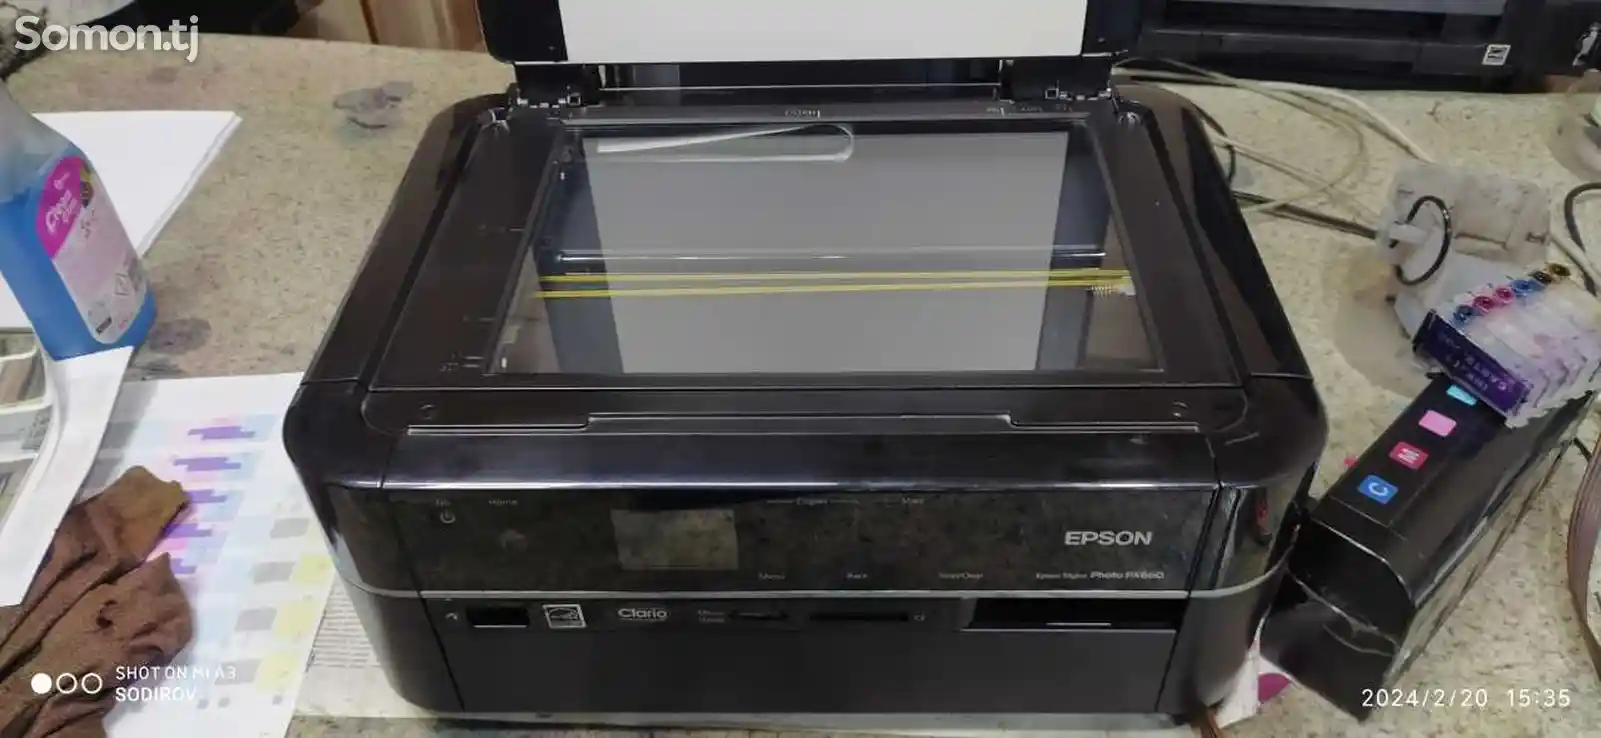 Принтер Epson TX650 3 в 1-1